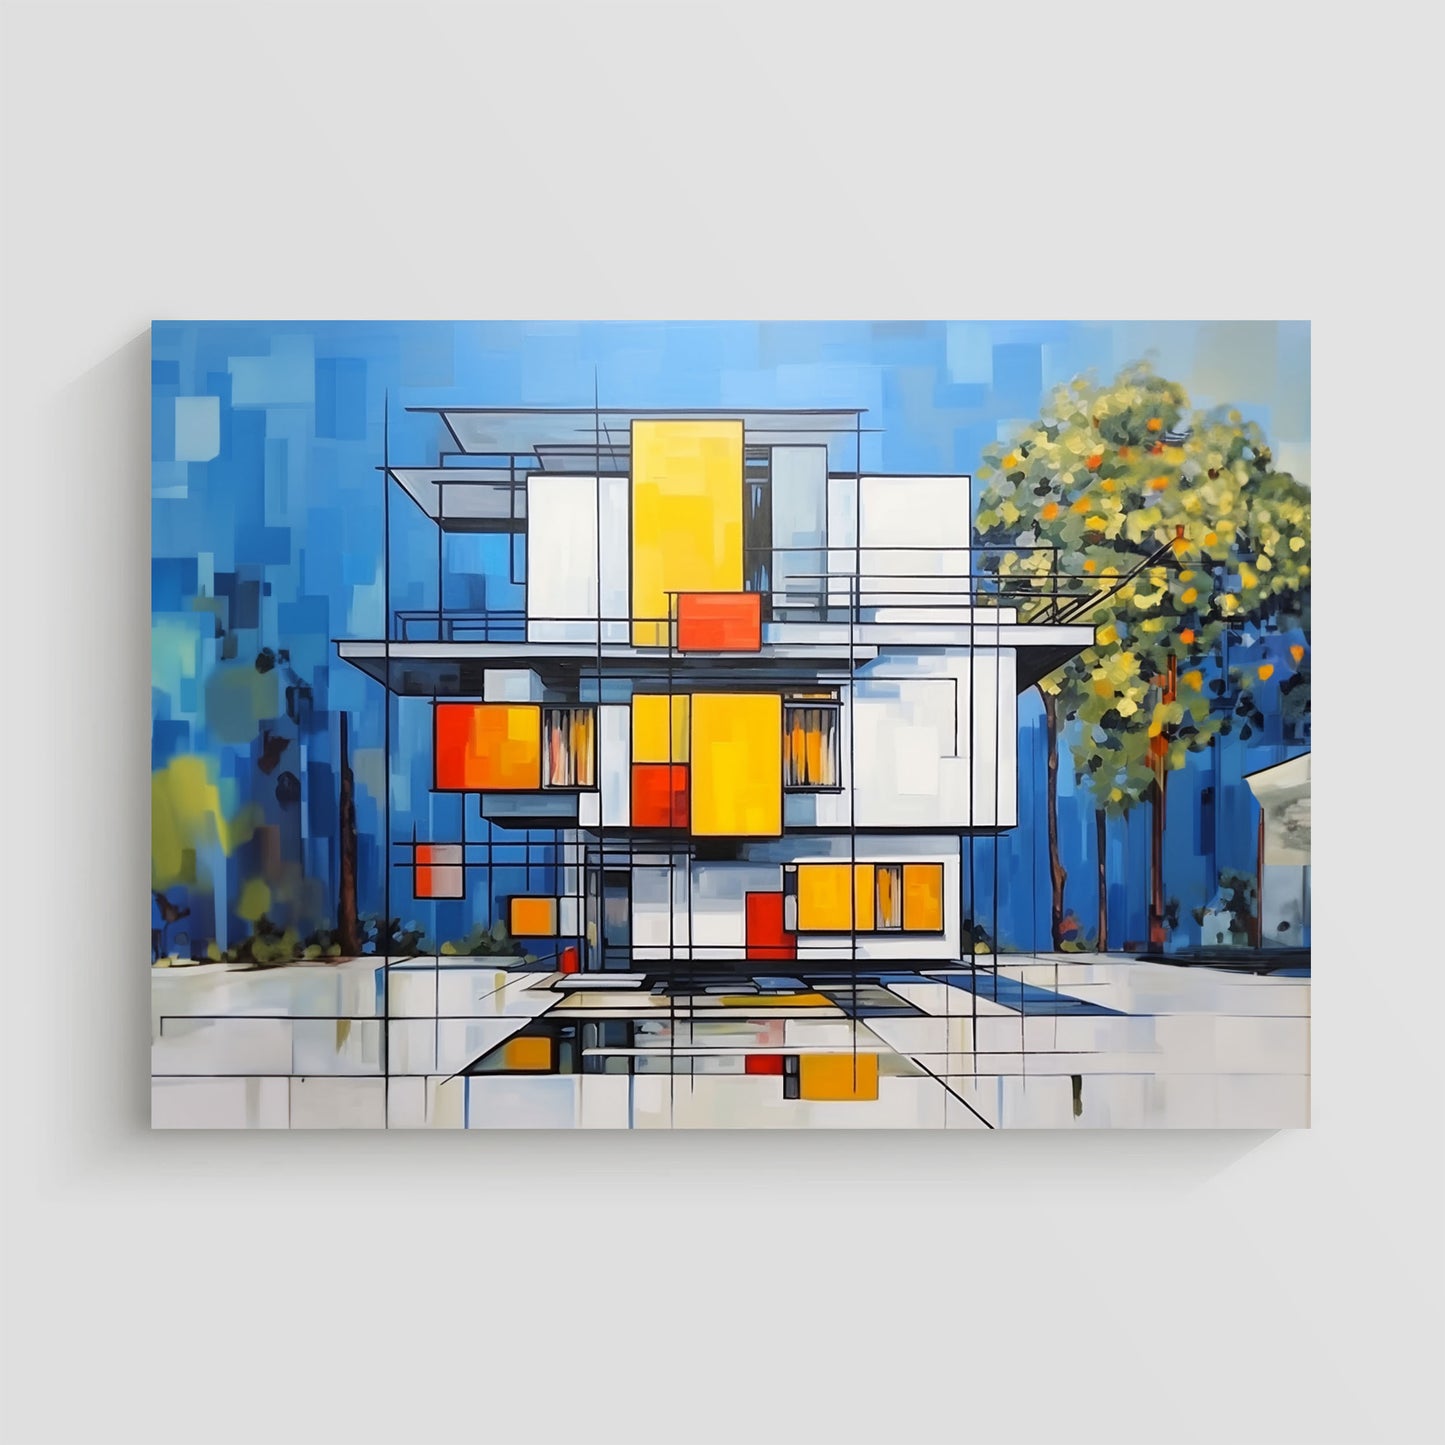 Arte abstracto de una casa moderna con diseño geométrico en colores blanco, amarillo, rojo y azul.